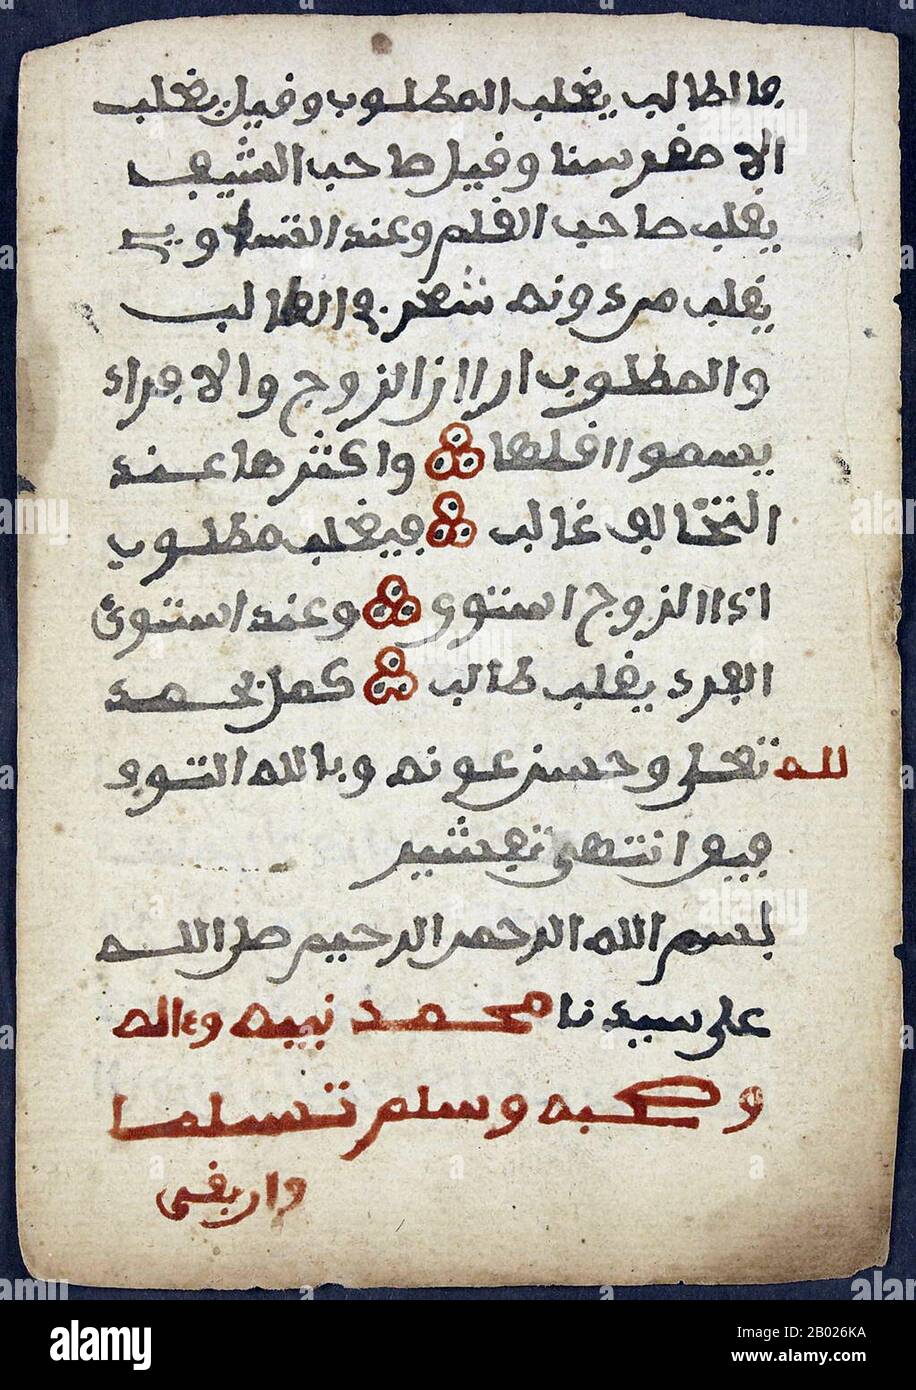 Timbuktu Manuscripts è un termine ombrello per quello che era un gran numero di manoscritti (stime variano nelle centinaia di migliaia) che erano stati conservati da famiglie private a Timbuktu (e in altre località), Mali. Una gran parte dei manoscritti ha avuto a che fare con l'arte, la medicina, la scienza, e la calligrafia del tardo Abbaside Califfato, e anche più inestimabili vecchie copie del Corano. La maggior parte dei manoscritti sono stati scritti in arabo, ma alcuni erano anche in lingue locali, tra cui Songhay e Tamasheq. Le date dei manoscritti variavano tra il tardo 13th e l'inizio del 20th Foto Stock